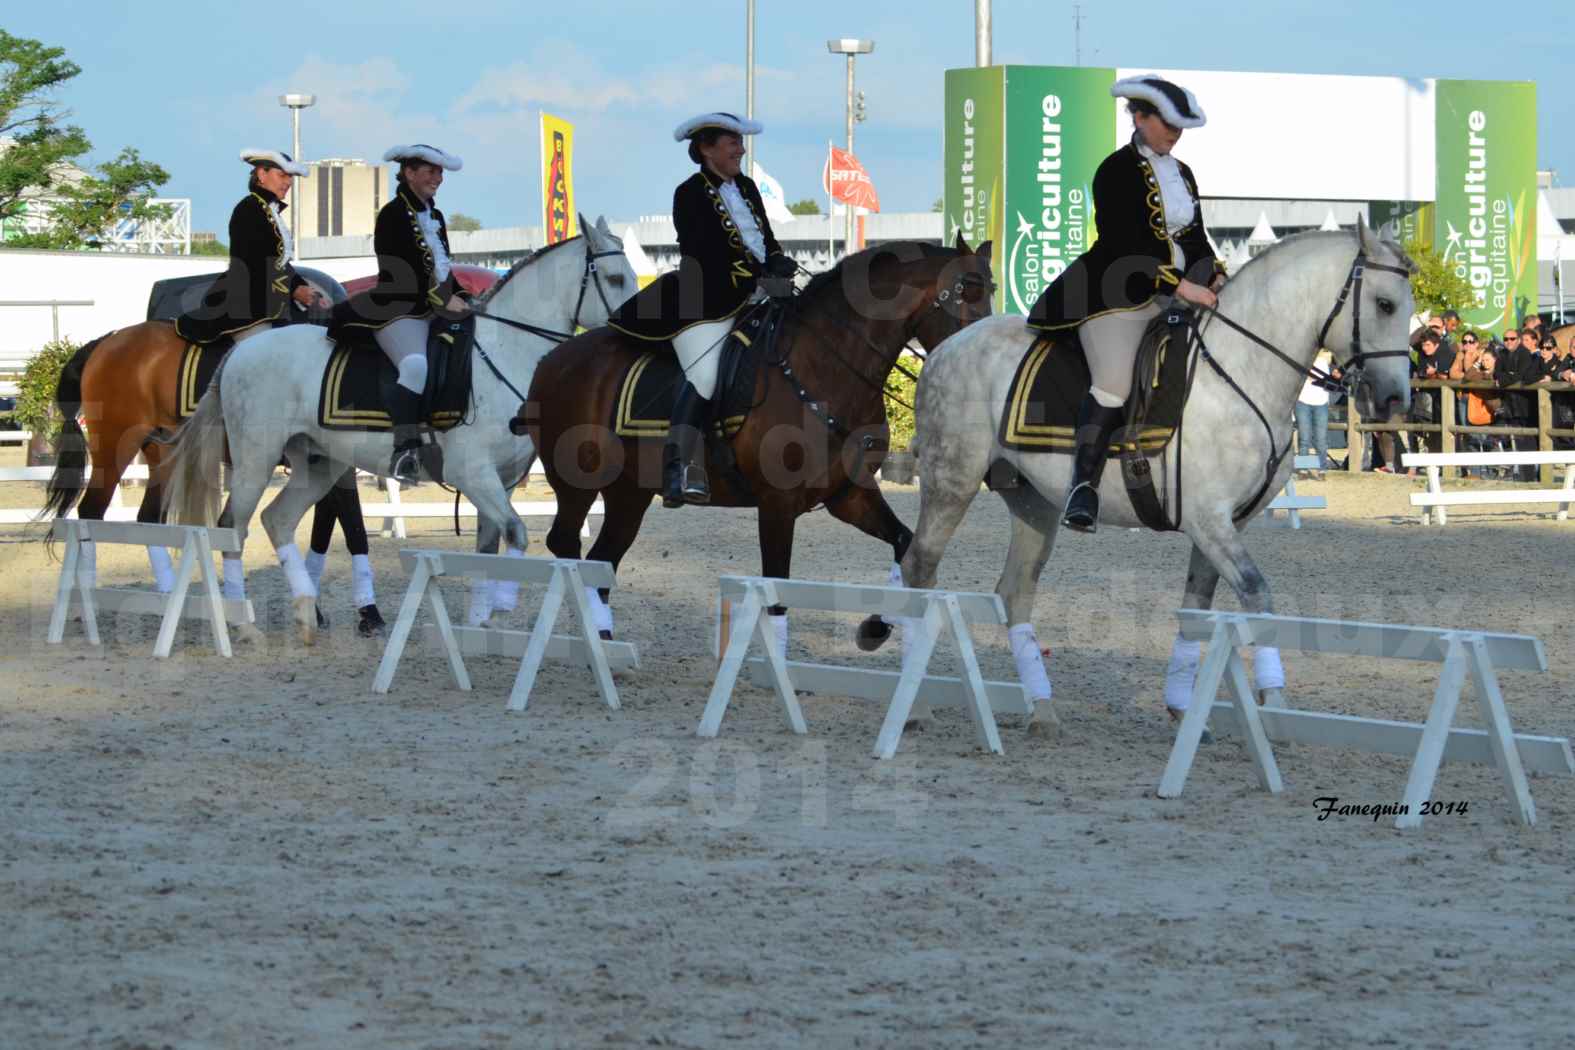 Carrousel de cavalières Equitation de travail lors du salon "Equitaine" à Bordeaux en 2014 - 61